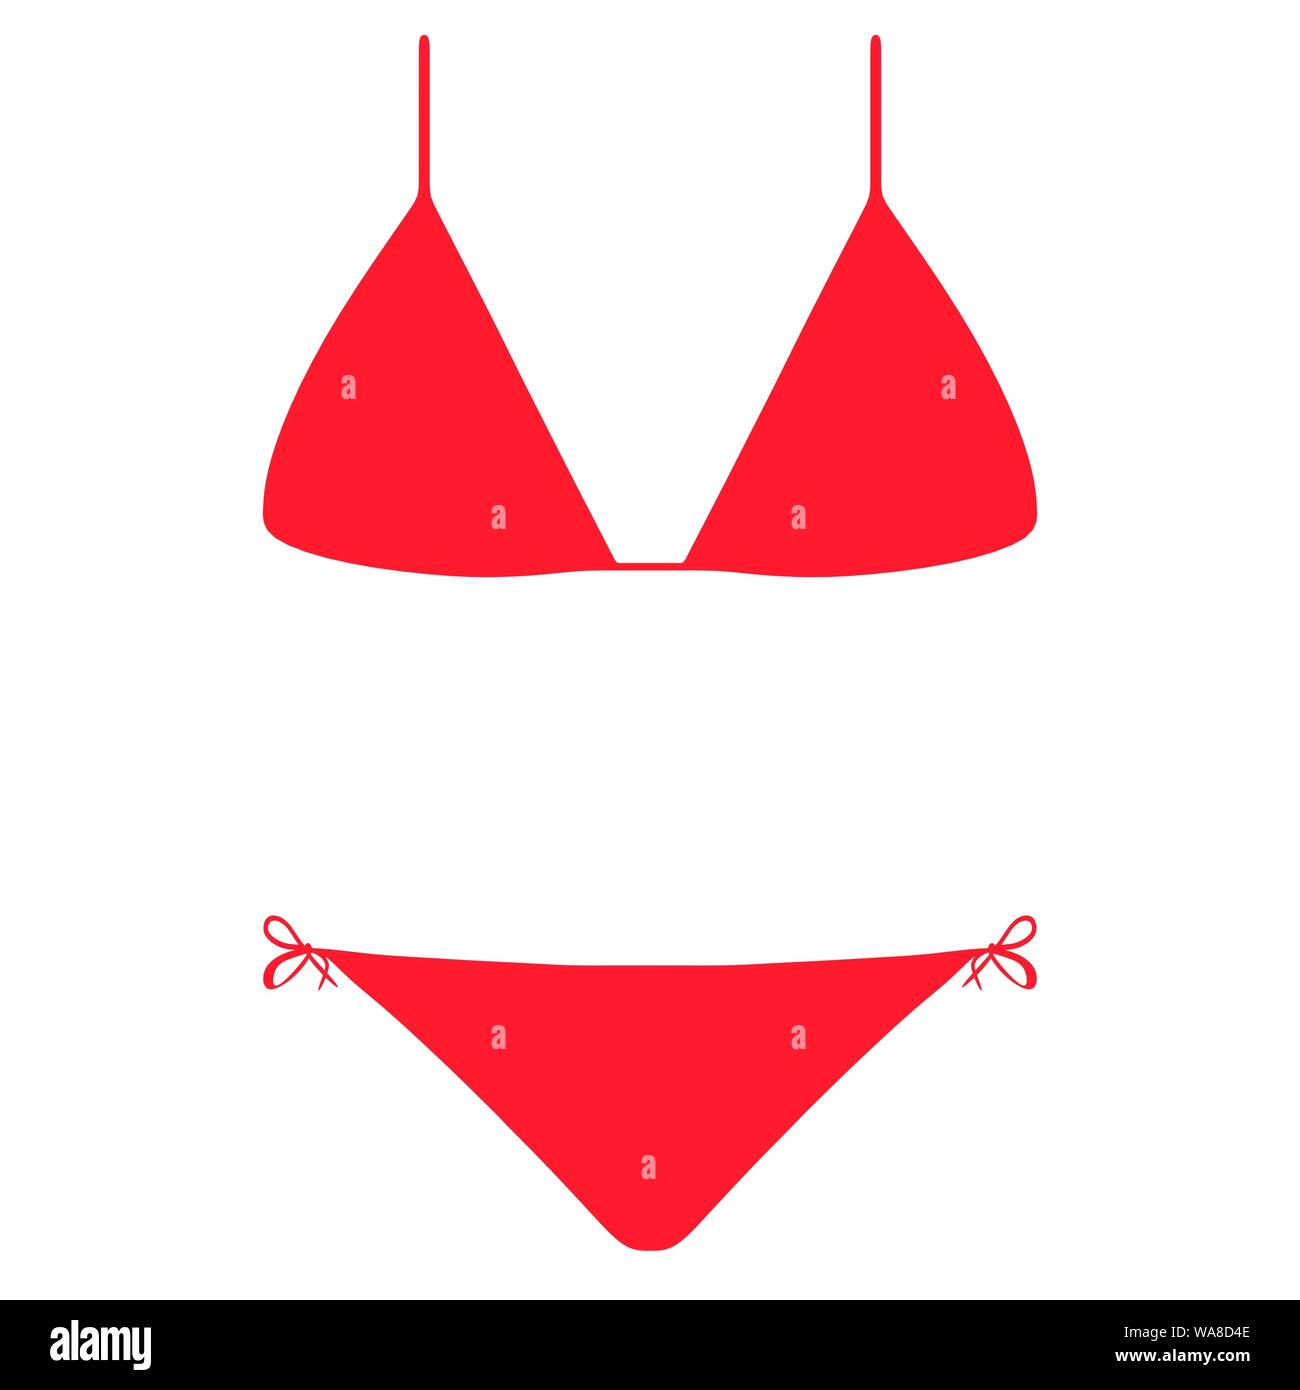 Red Bikini Emoji Stock Photo - Alamy